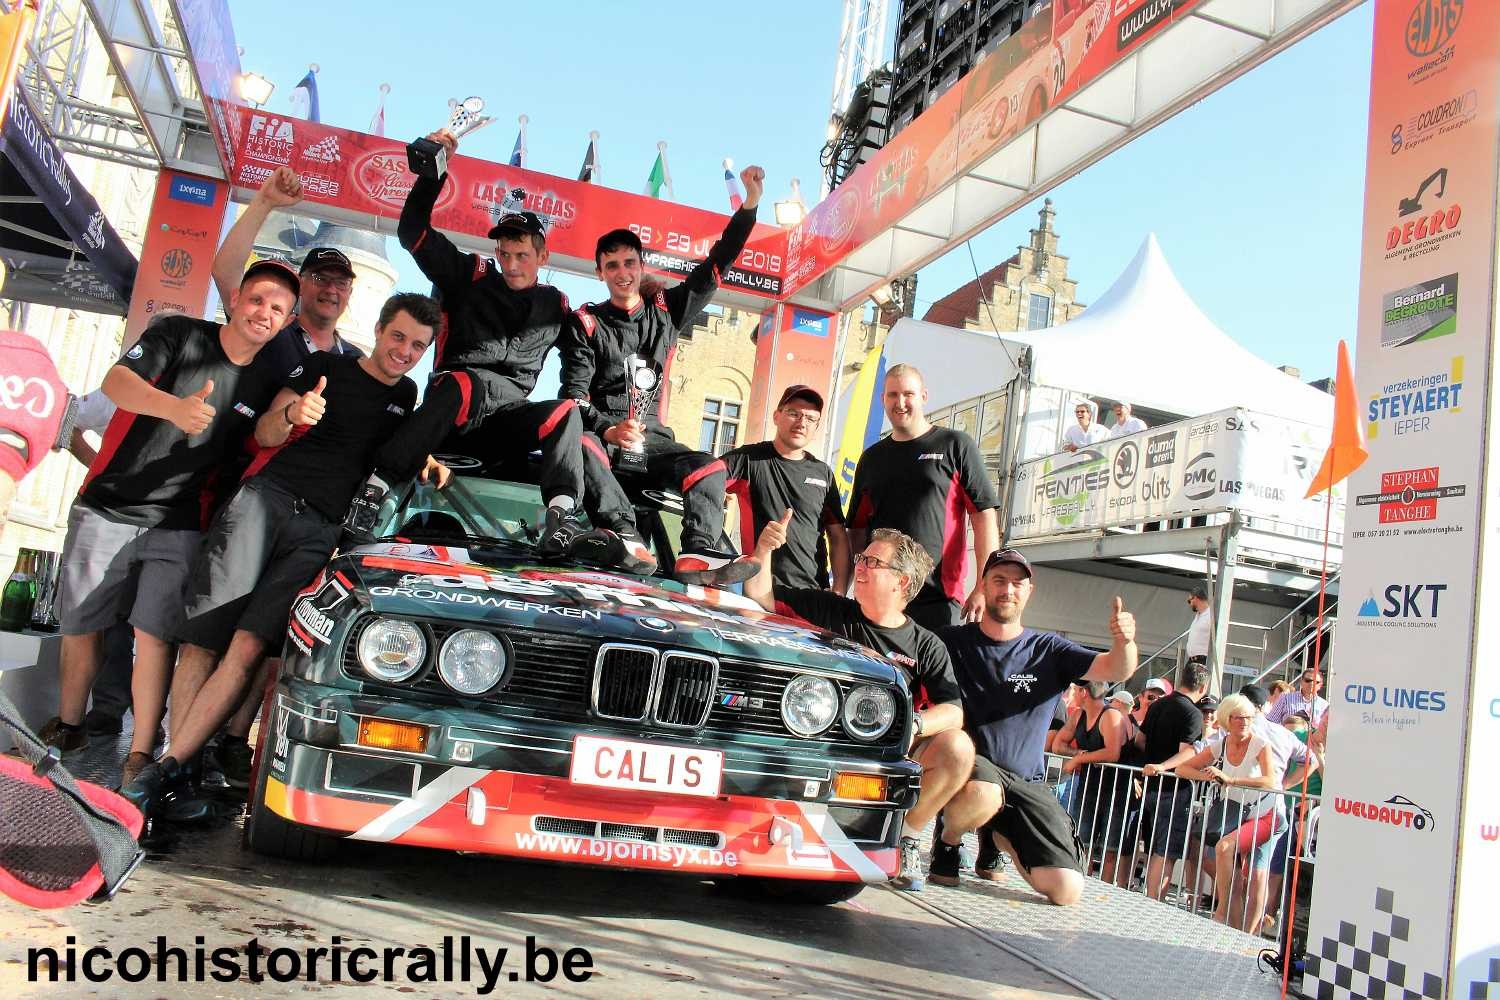 Verslag Ypres Historic Rally: Twee vrienden, twee debutanten, twee overwinningen!